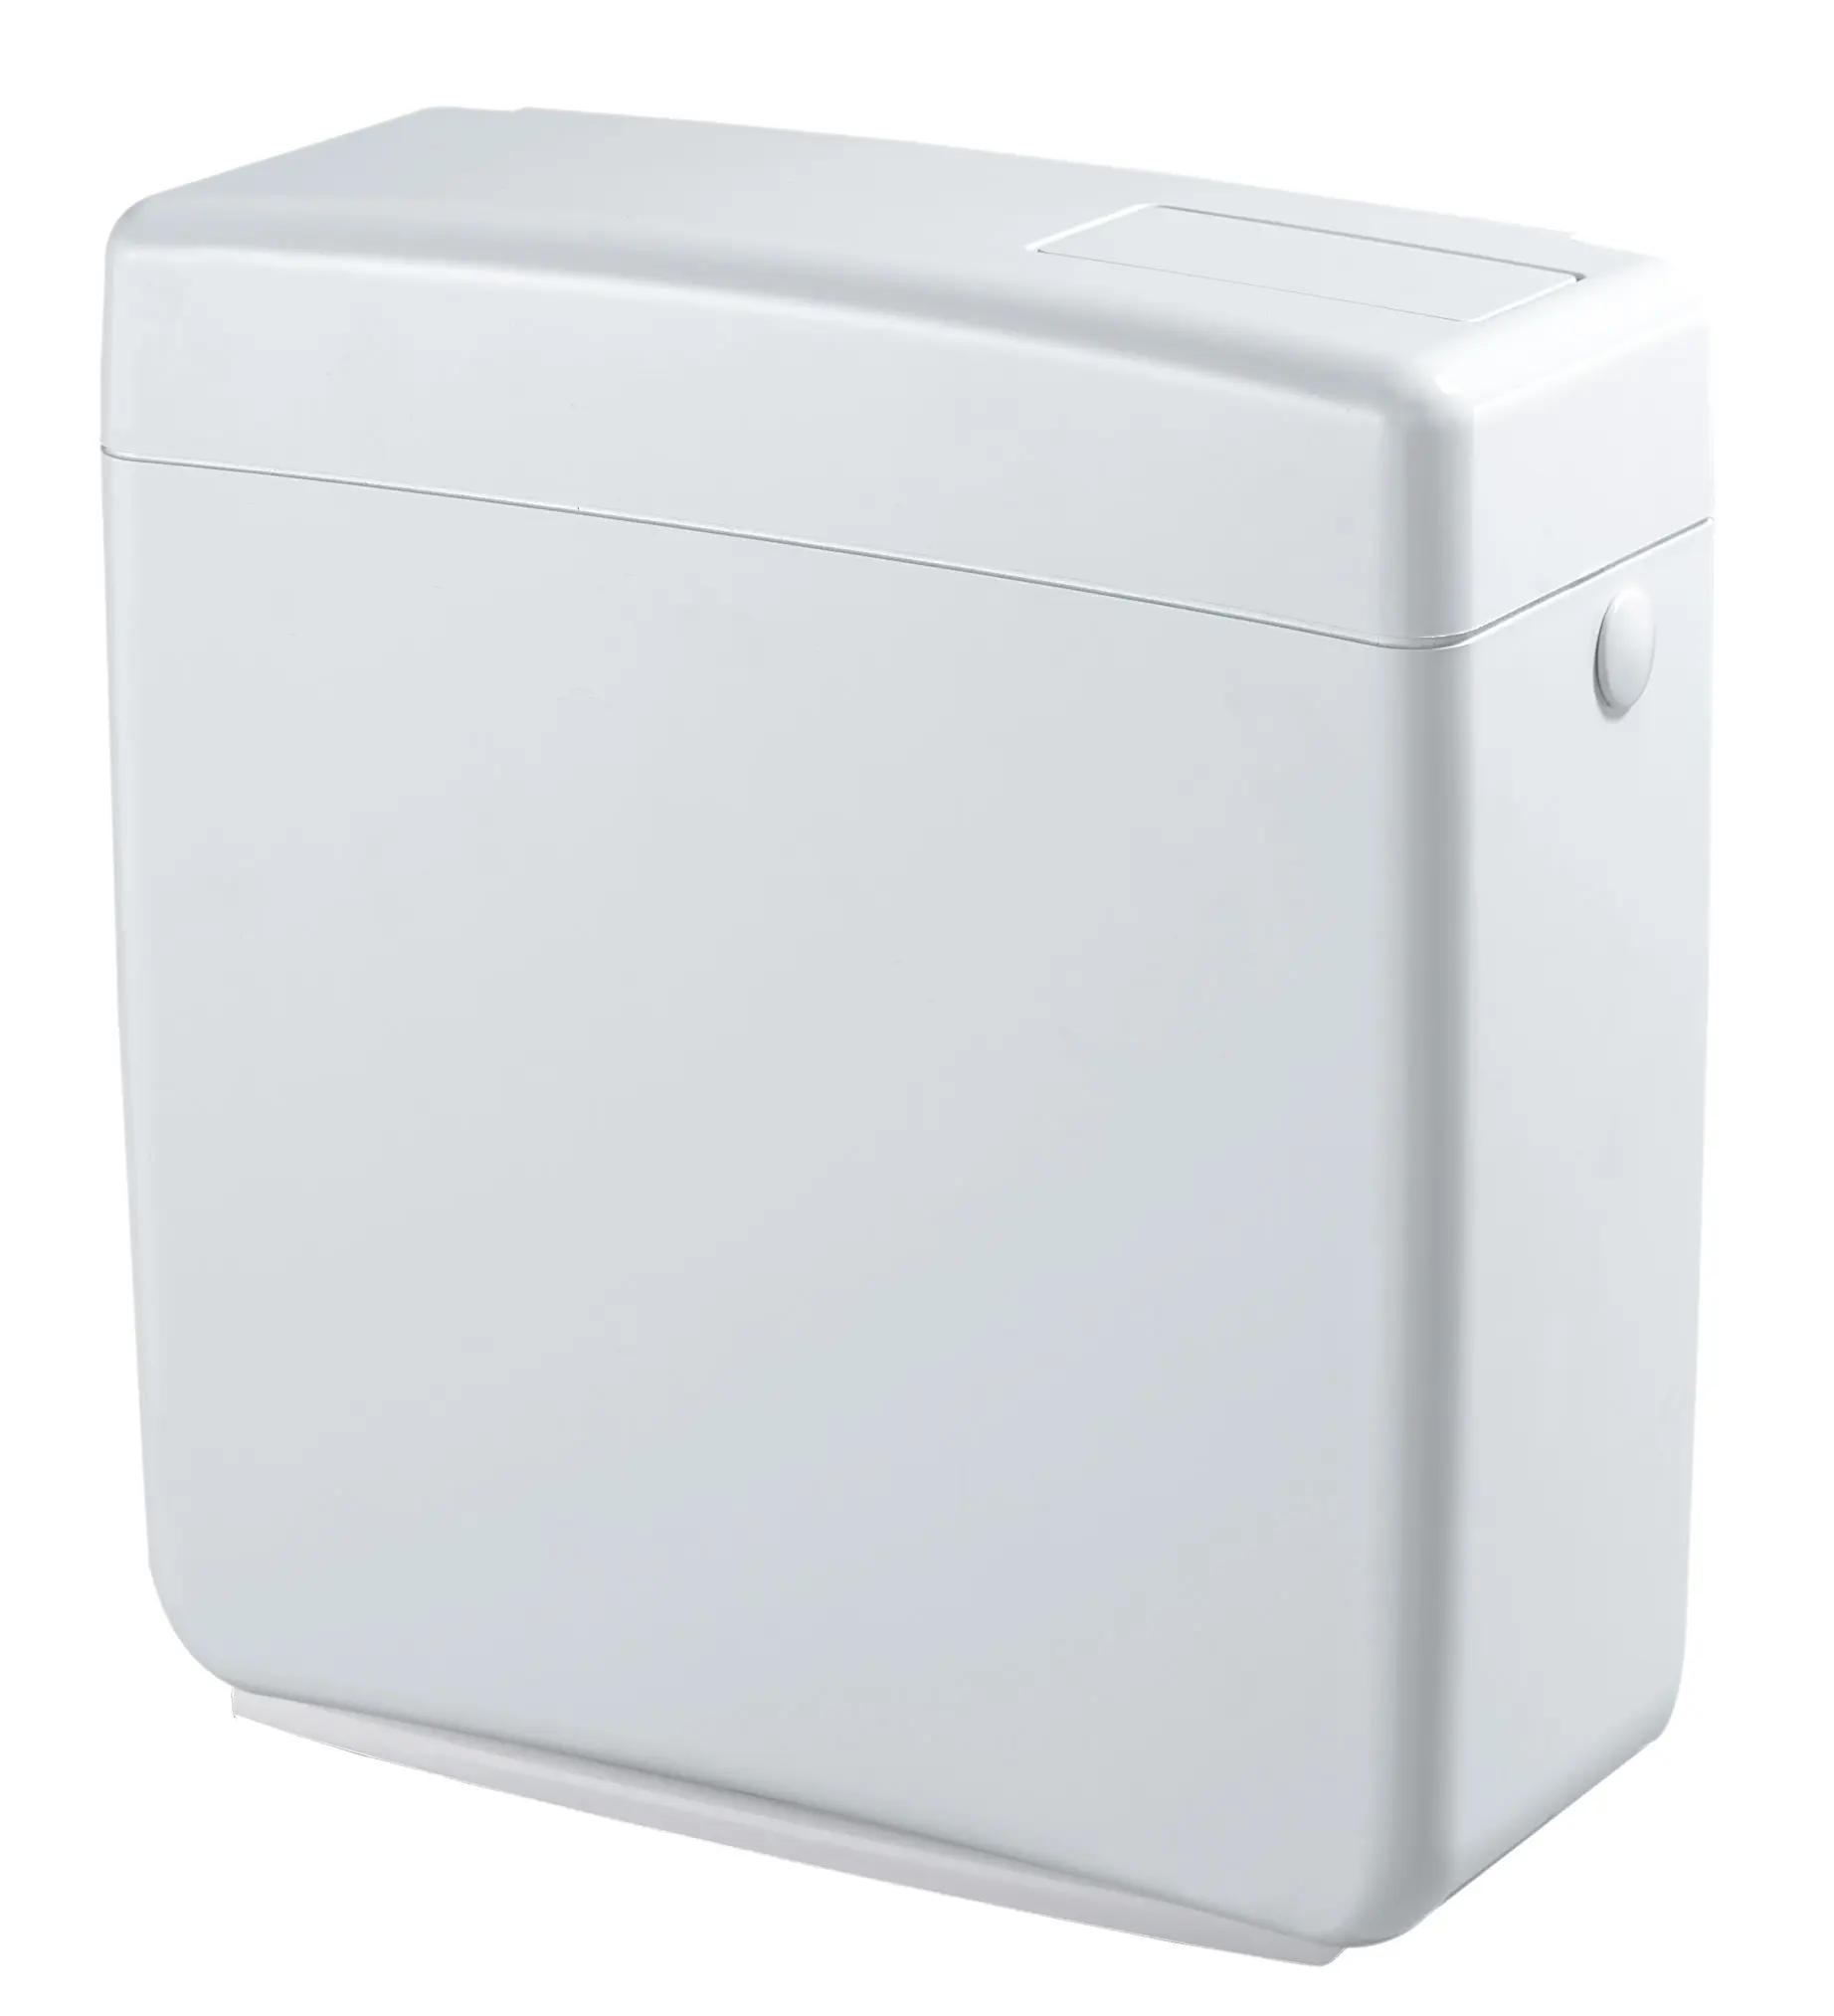 Réservoirs de toilettes à chasse d'eau rapides et silencieux de la meilleure qualité avec démarrage Snd Stop bouton économiseur d'eau fixations murales incluses tuyau de vidange